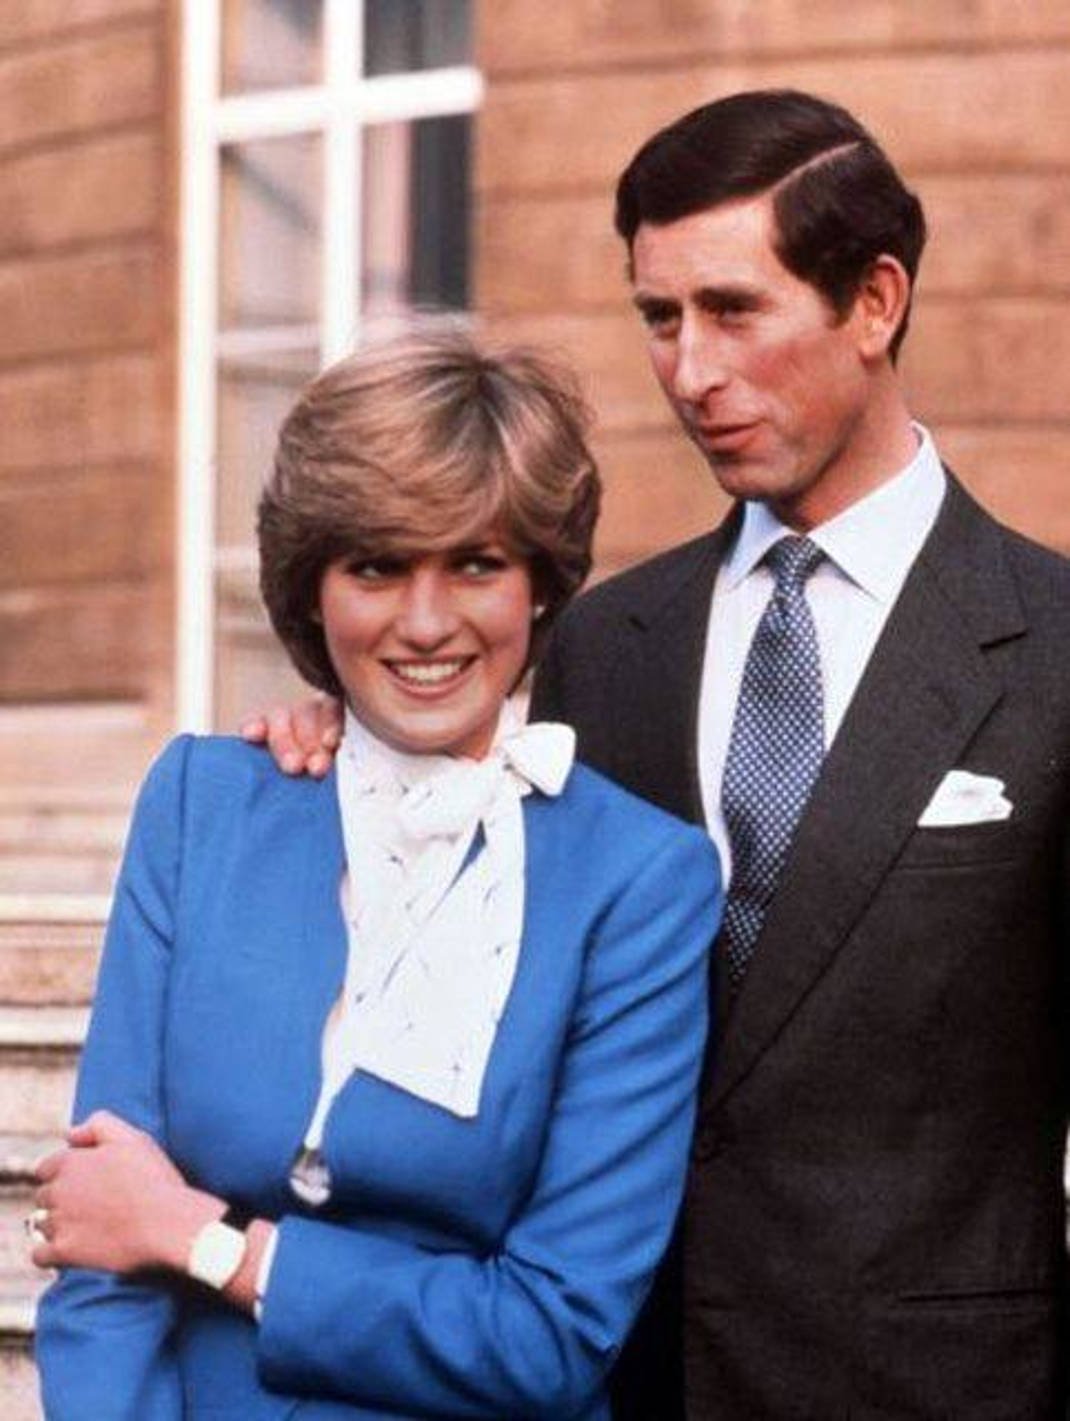 Facebook/Princess Diana - Queen of Style